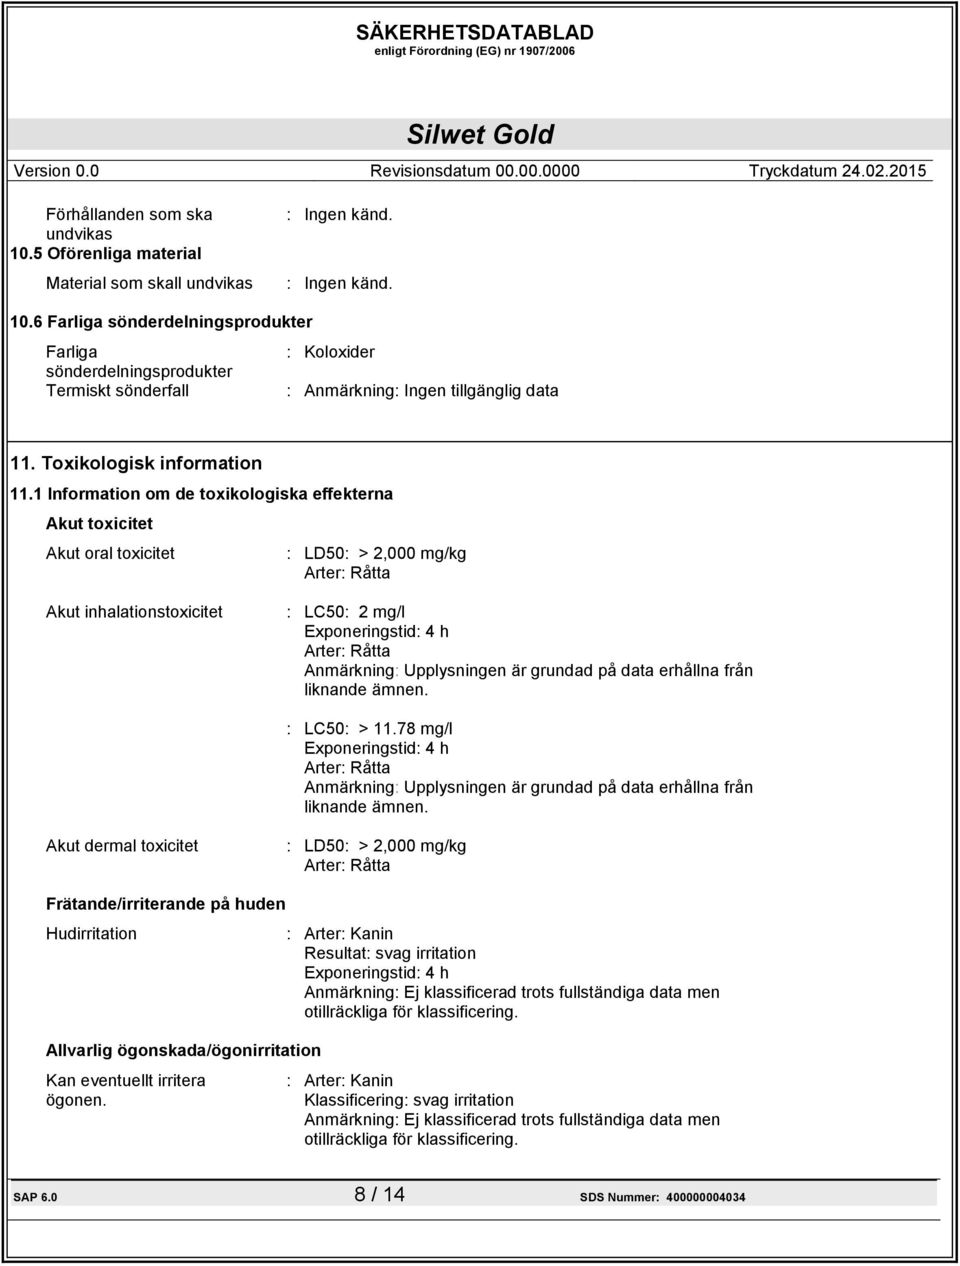 1 Information om de toxikologiska effekterna Akut toxicitet Akut oral toxicitet : LD50: > 2,000 mg/kg Arter: Råtta Akut inhalationstoxicitet : LC50: 2 mg/l Exponeringstid: 4 h Arter: Råtta